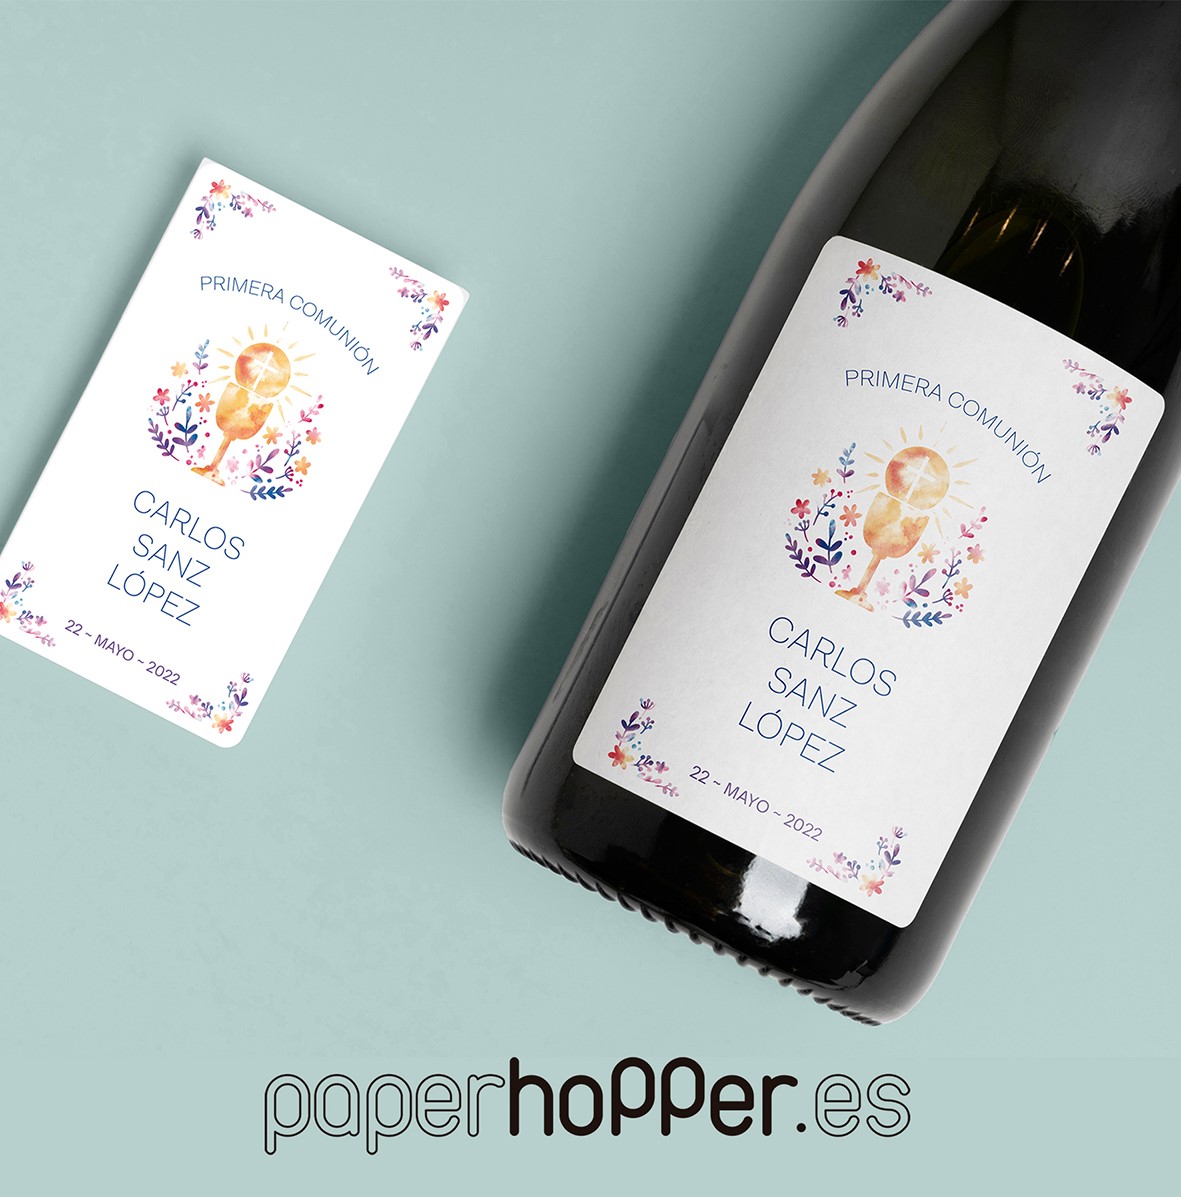 Etiquetas adhesivas personalizadas Botella Vino Hojas y Flores - Paperhopper